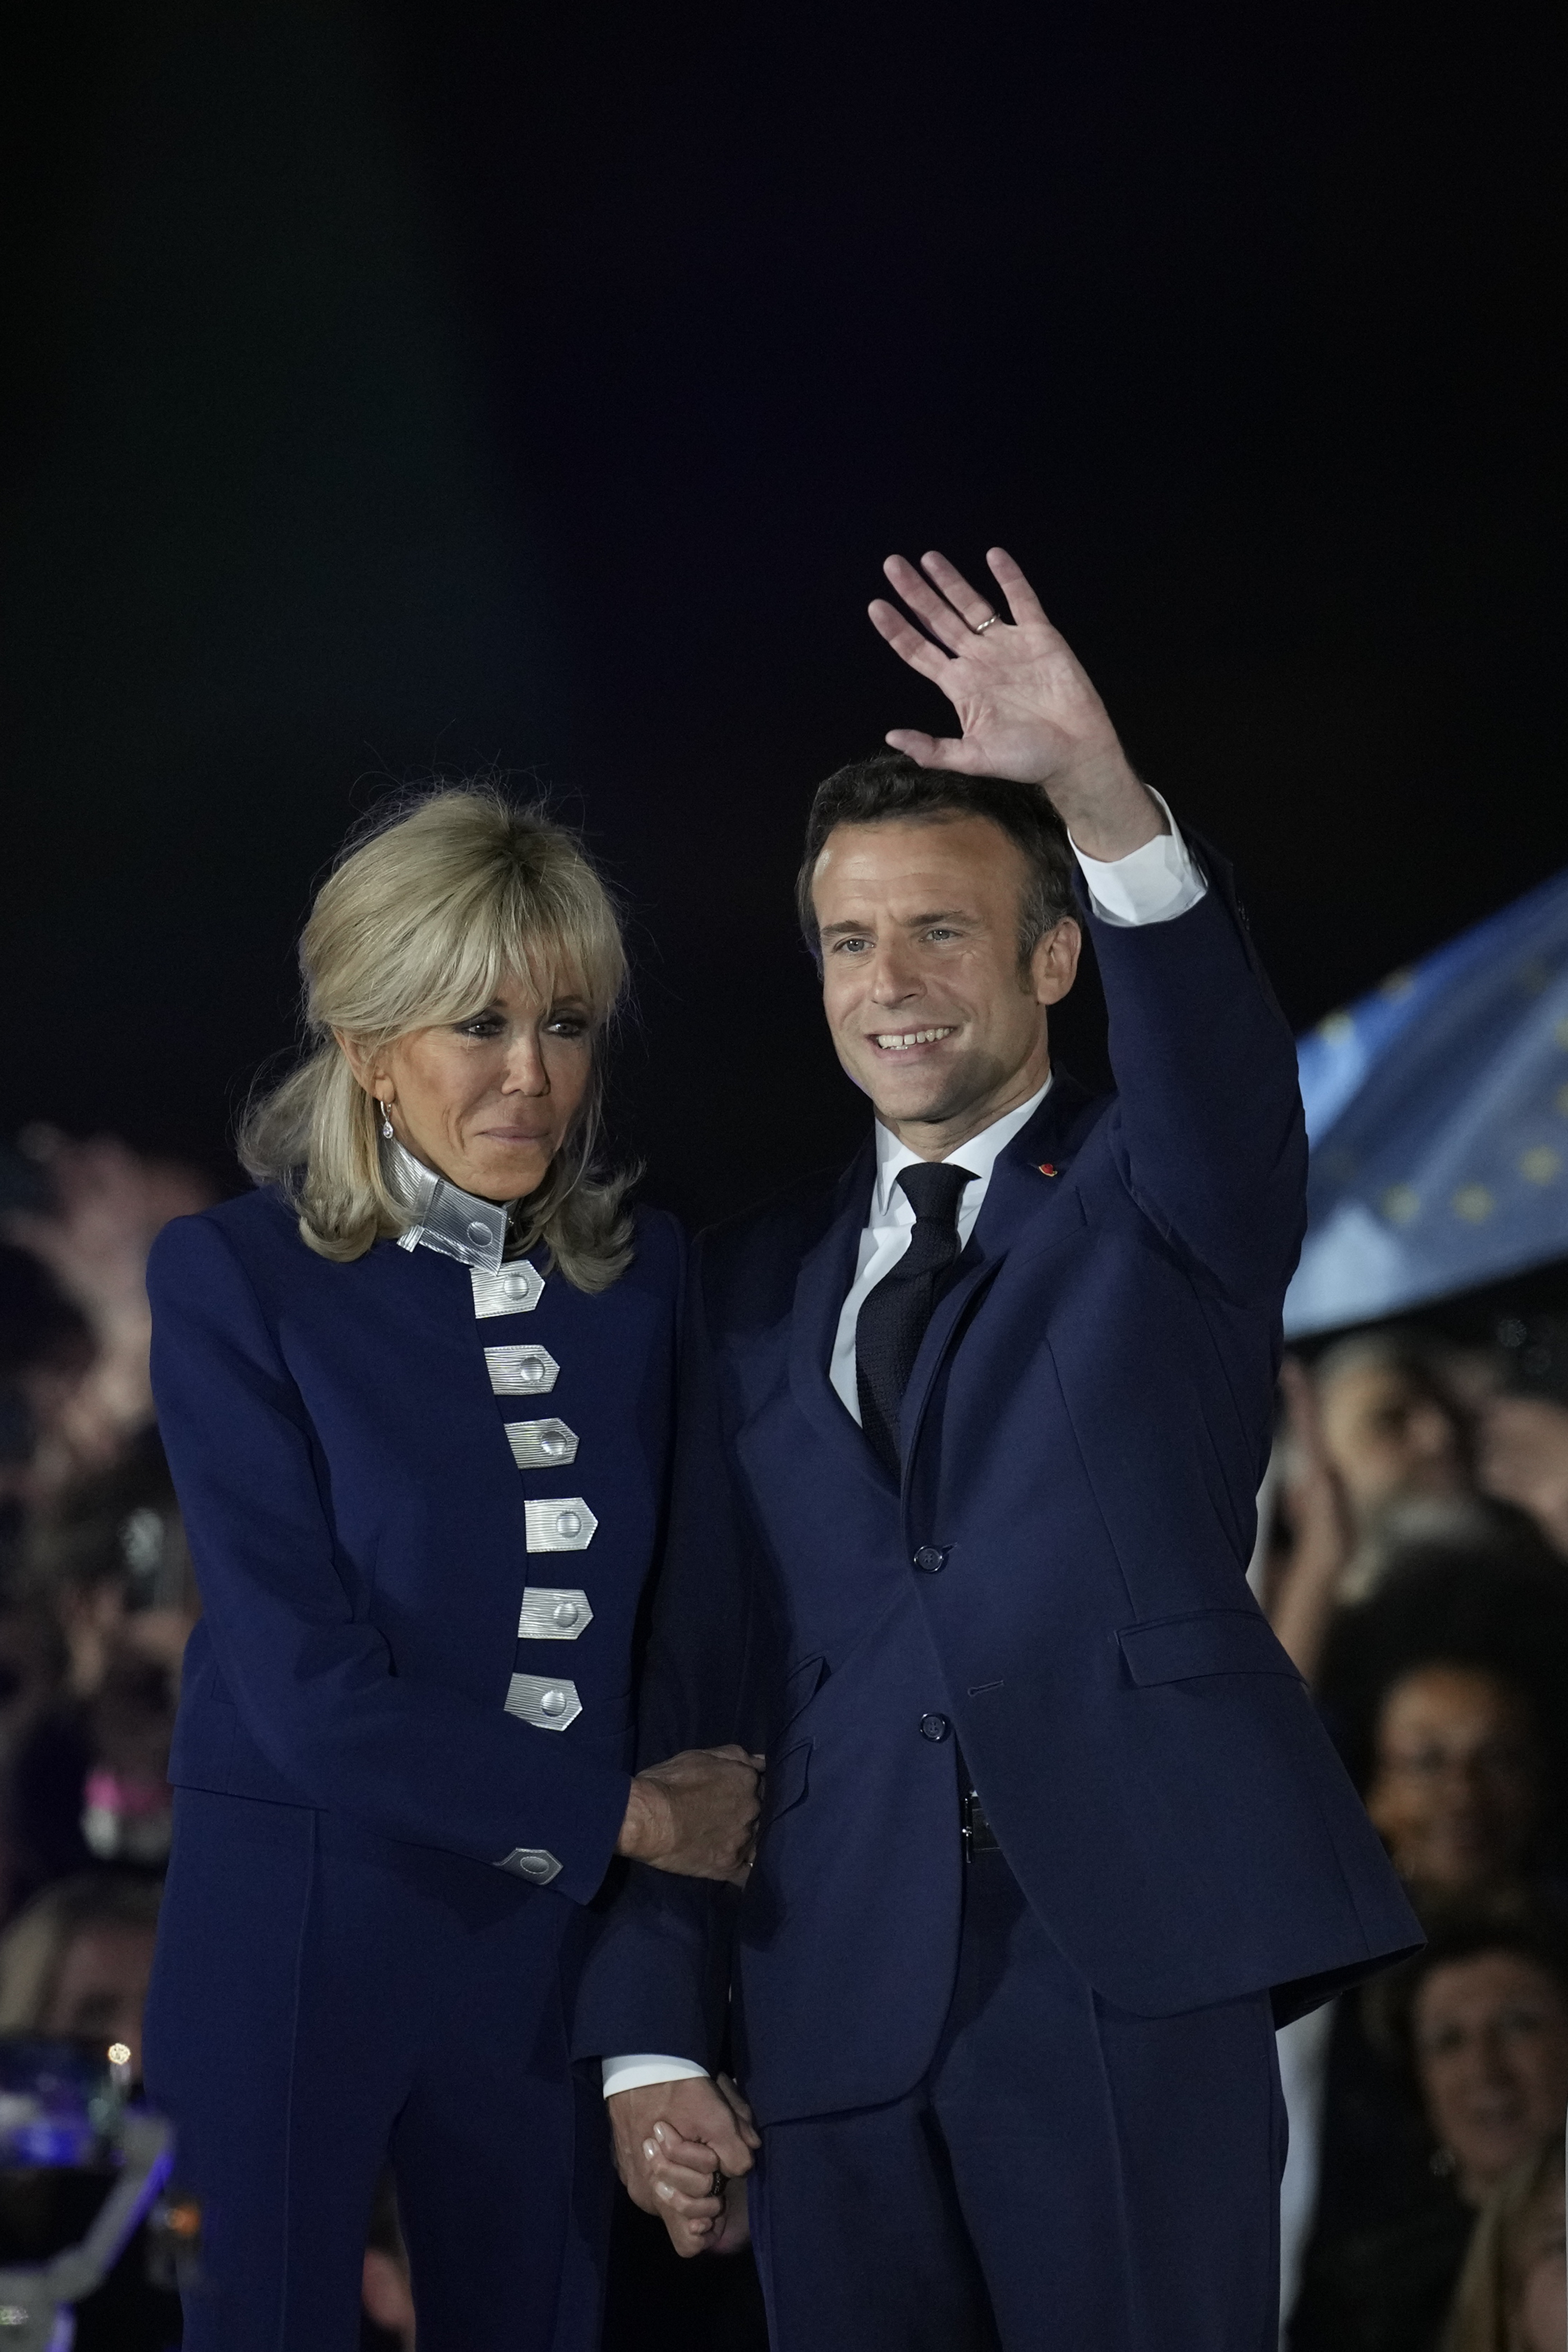 La escandalosa historia de amor de Brigitte y Emmanuel Macron.